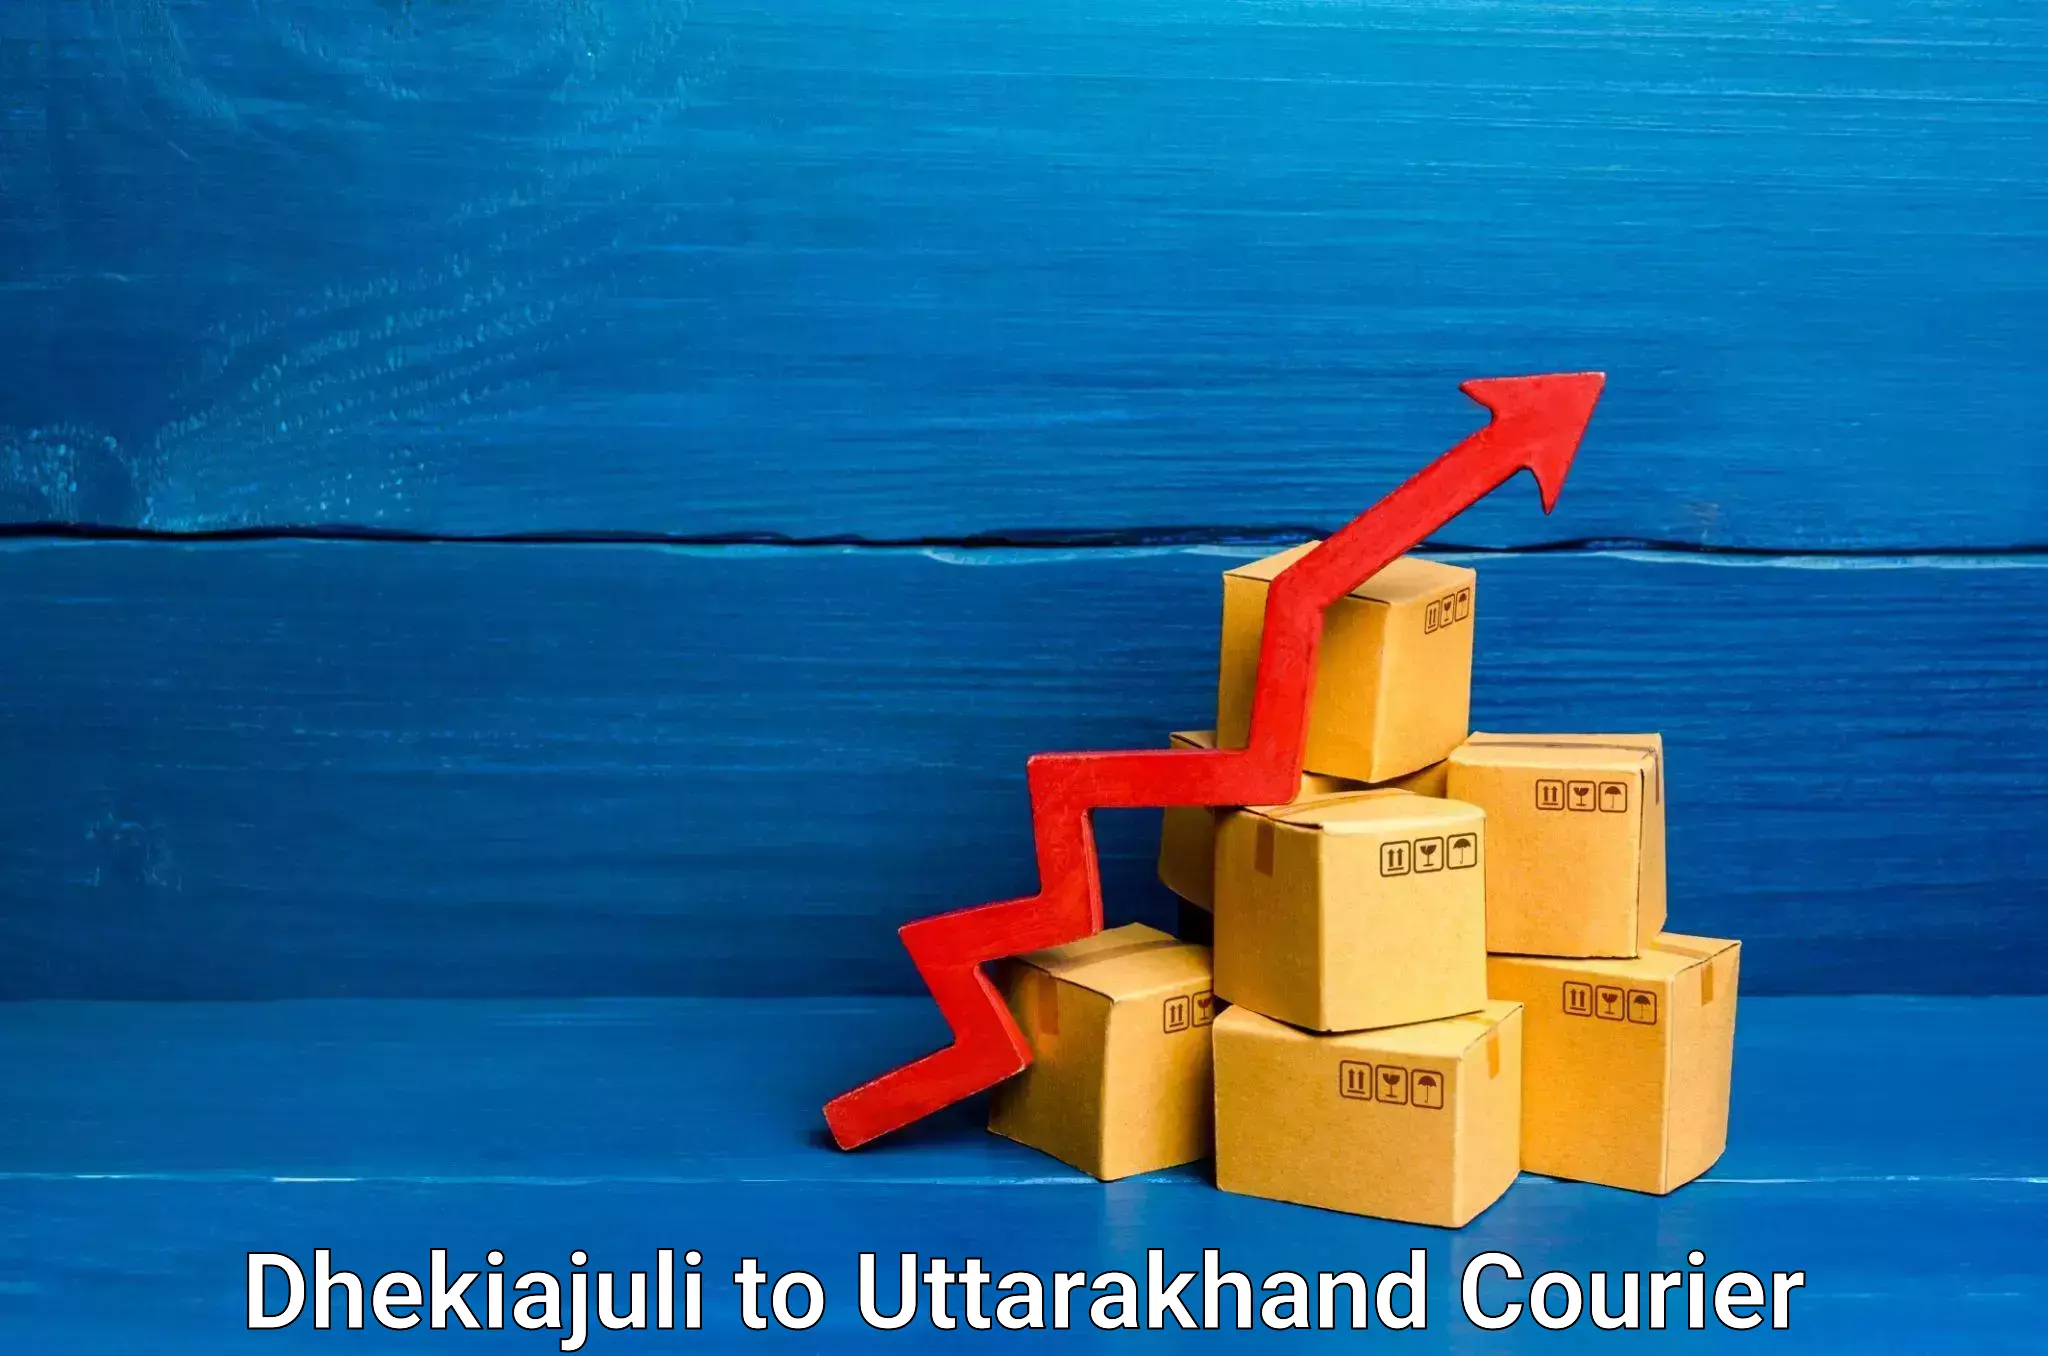 Reliable courier service Dhekiajuli to Paithani